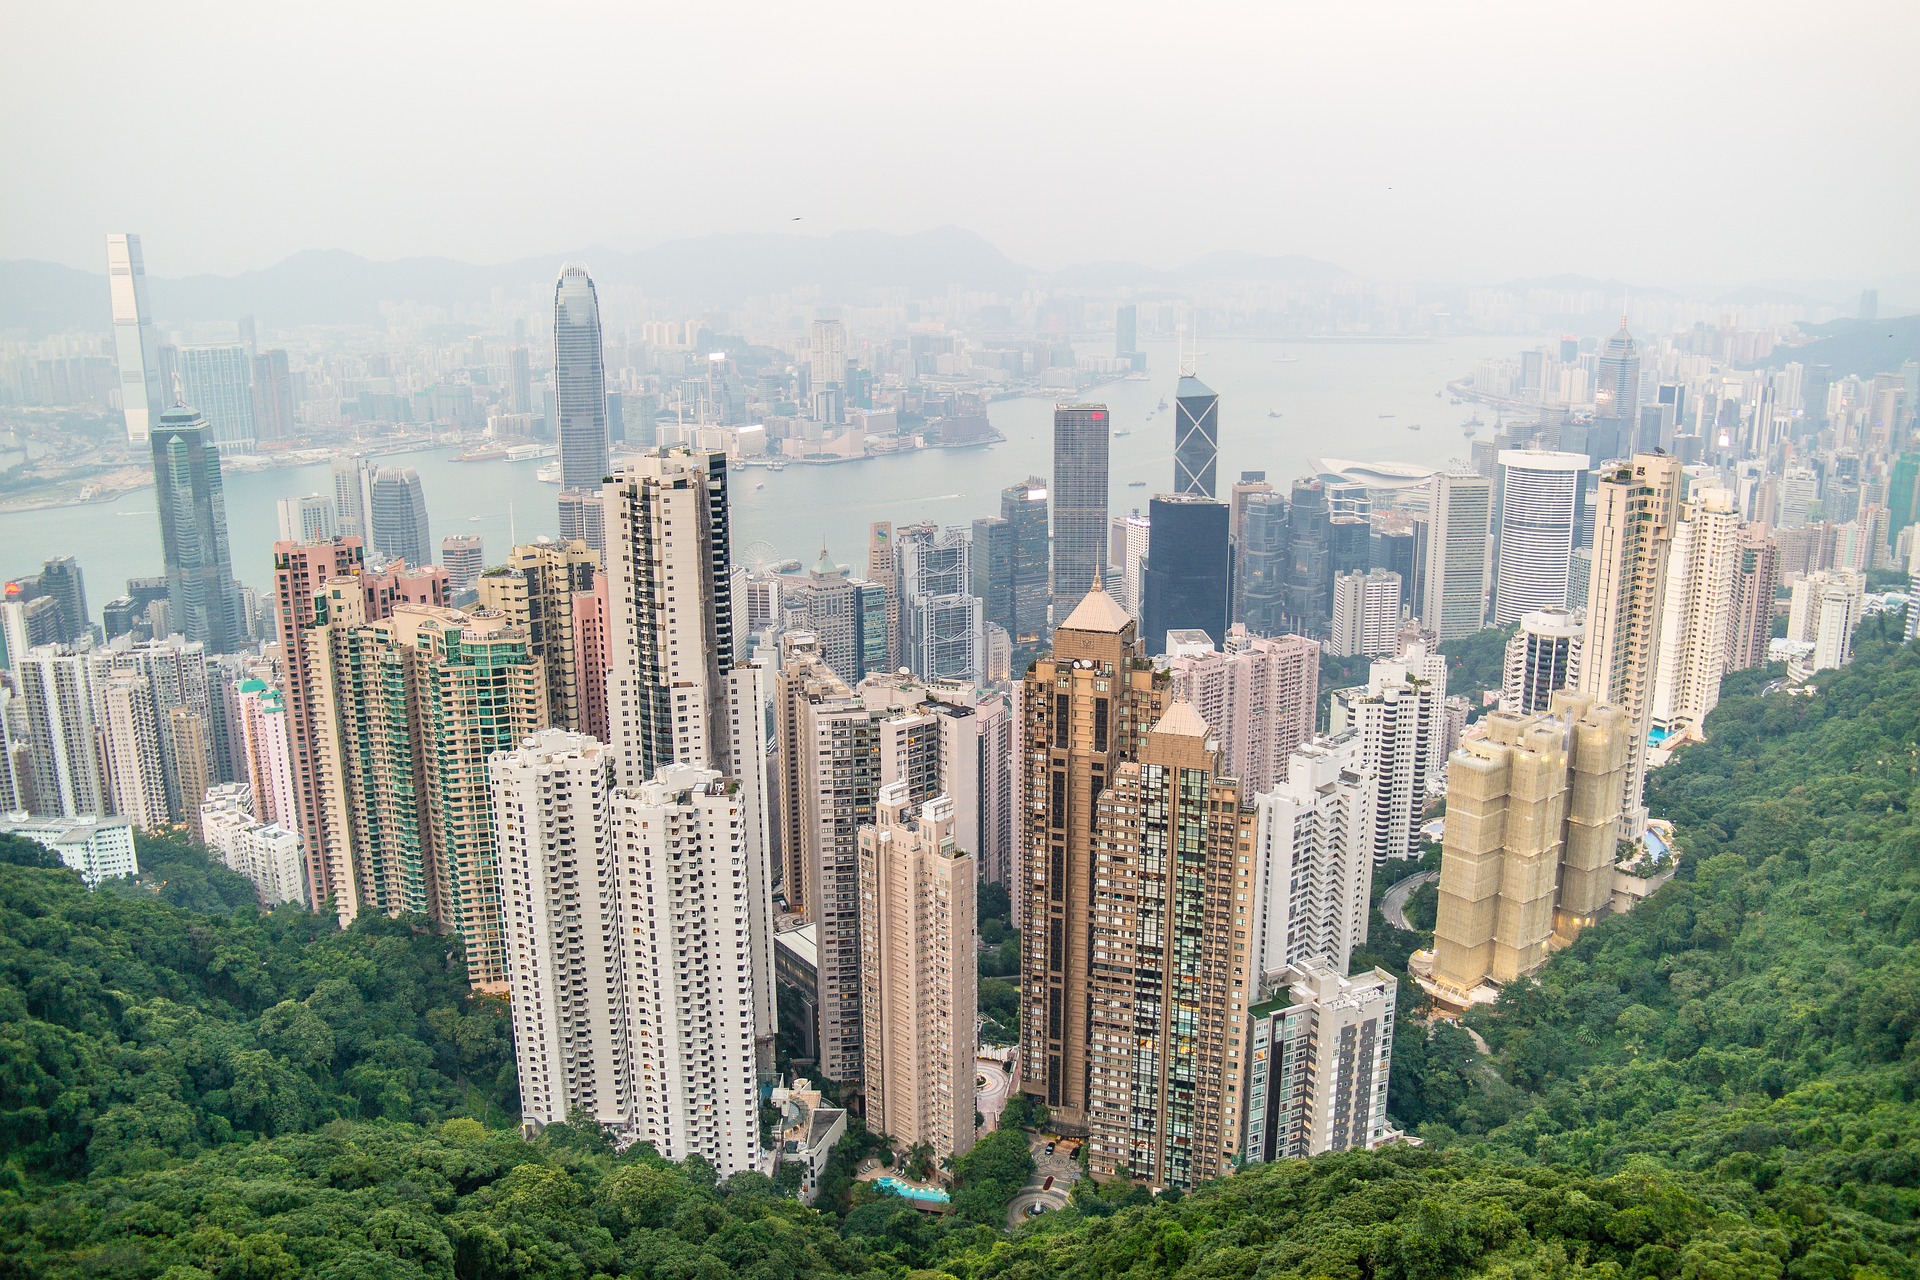 Hong Kong Tax News